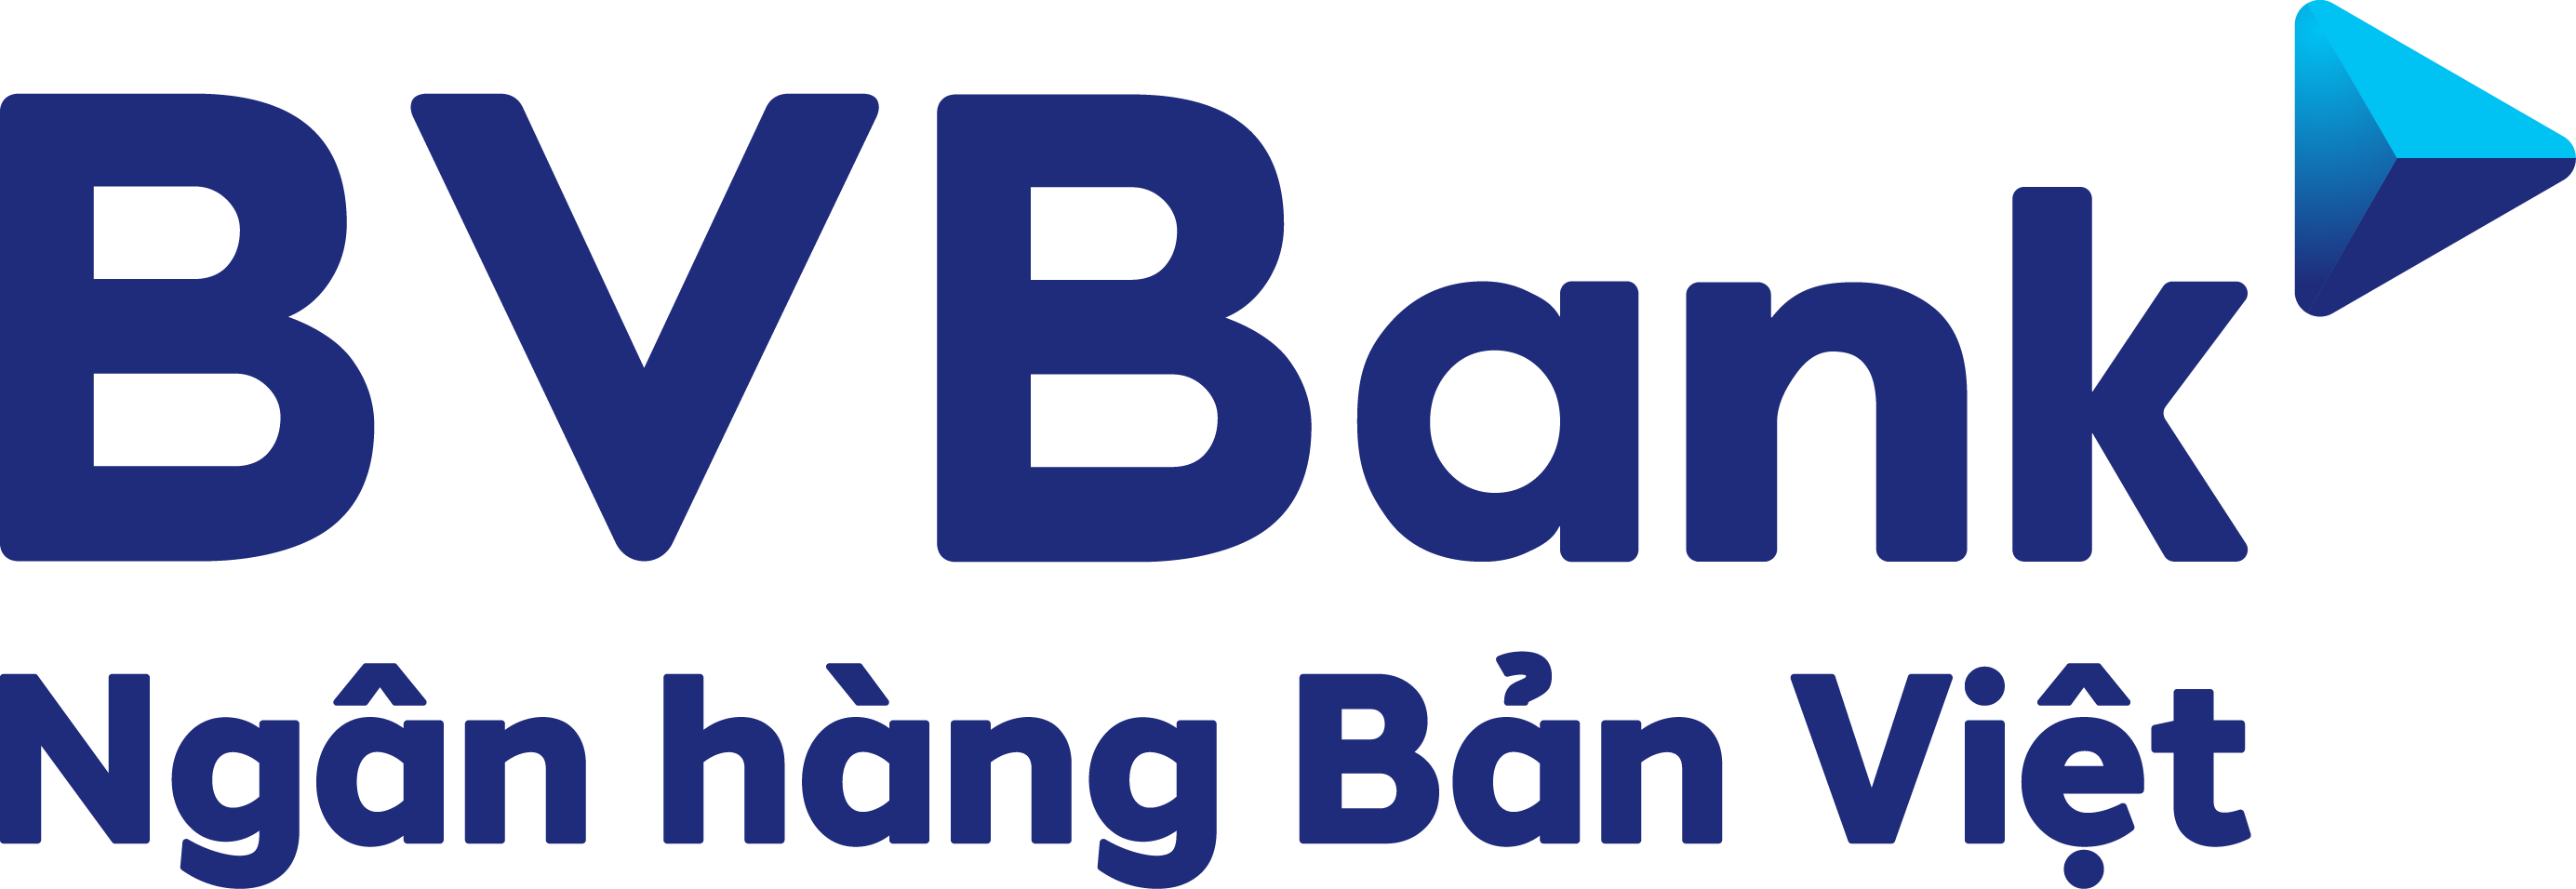 Ngân hàng TMCP Bản Việt (Viet Capital Bank)